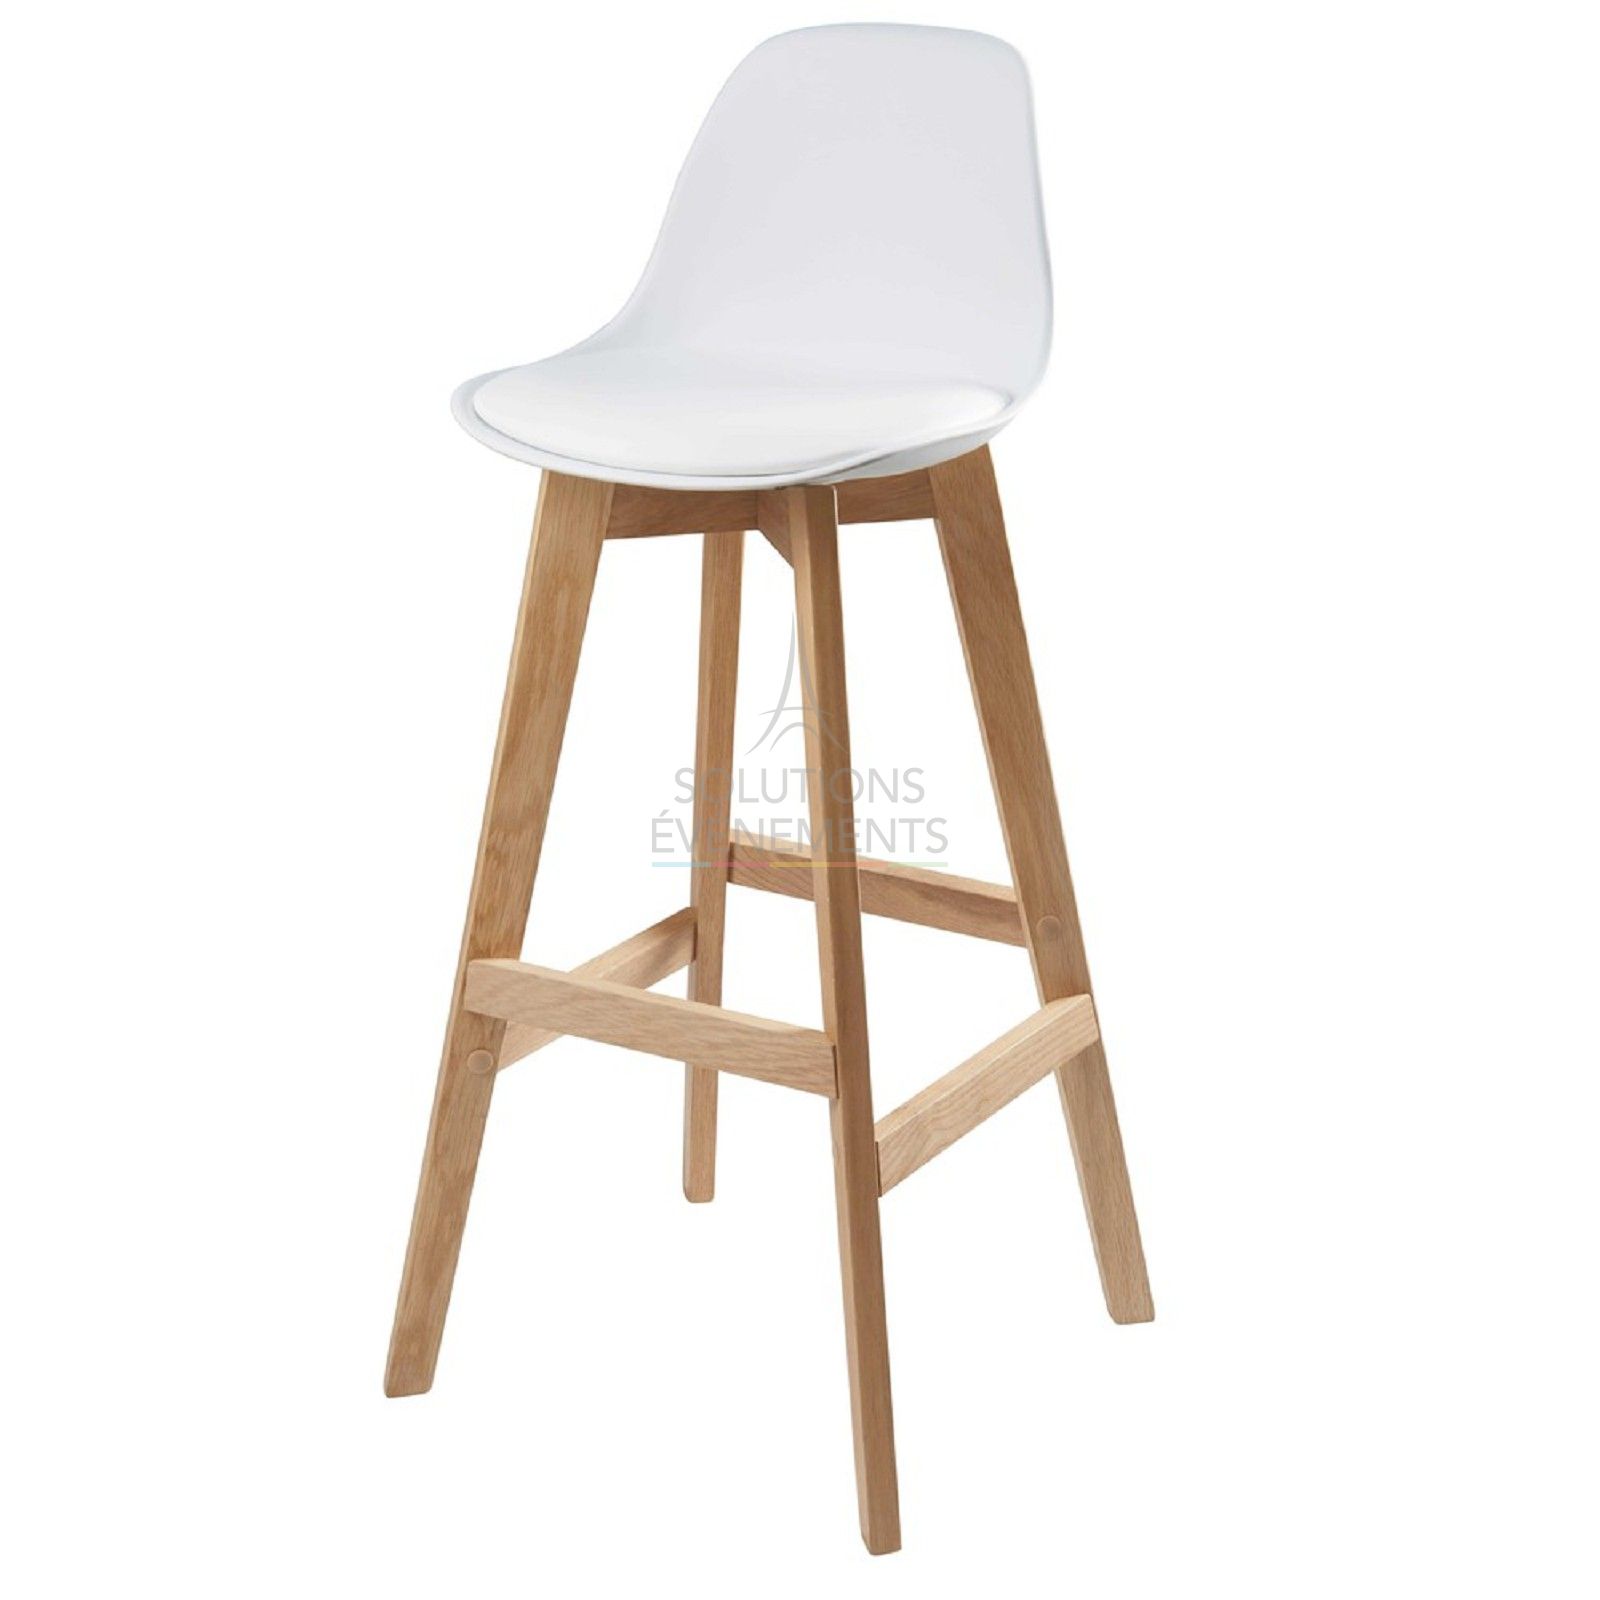 Scandinavian high bar stool rental